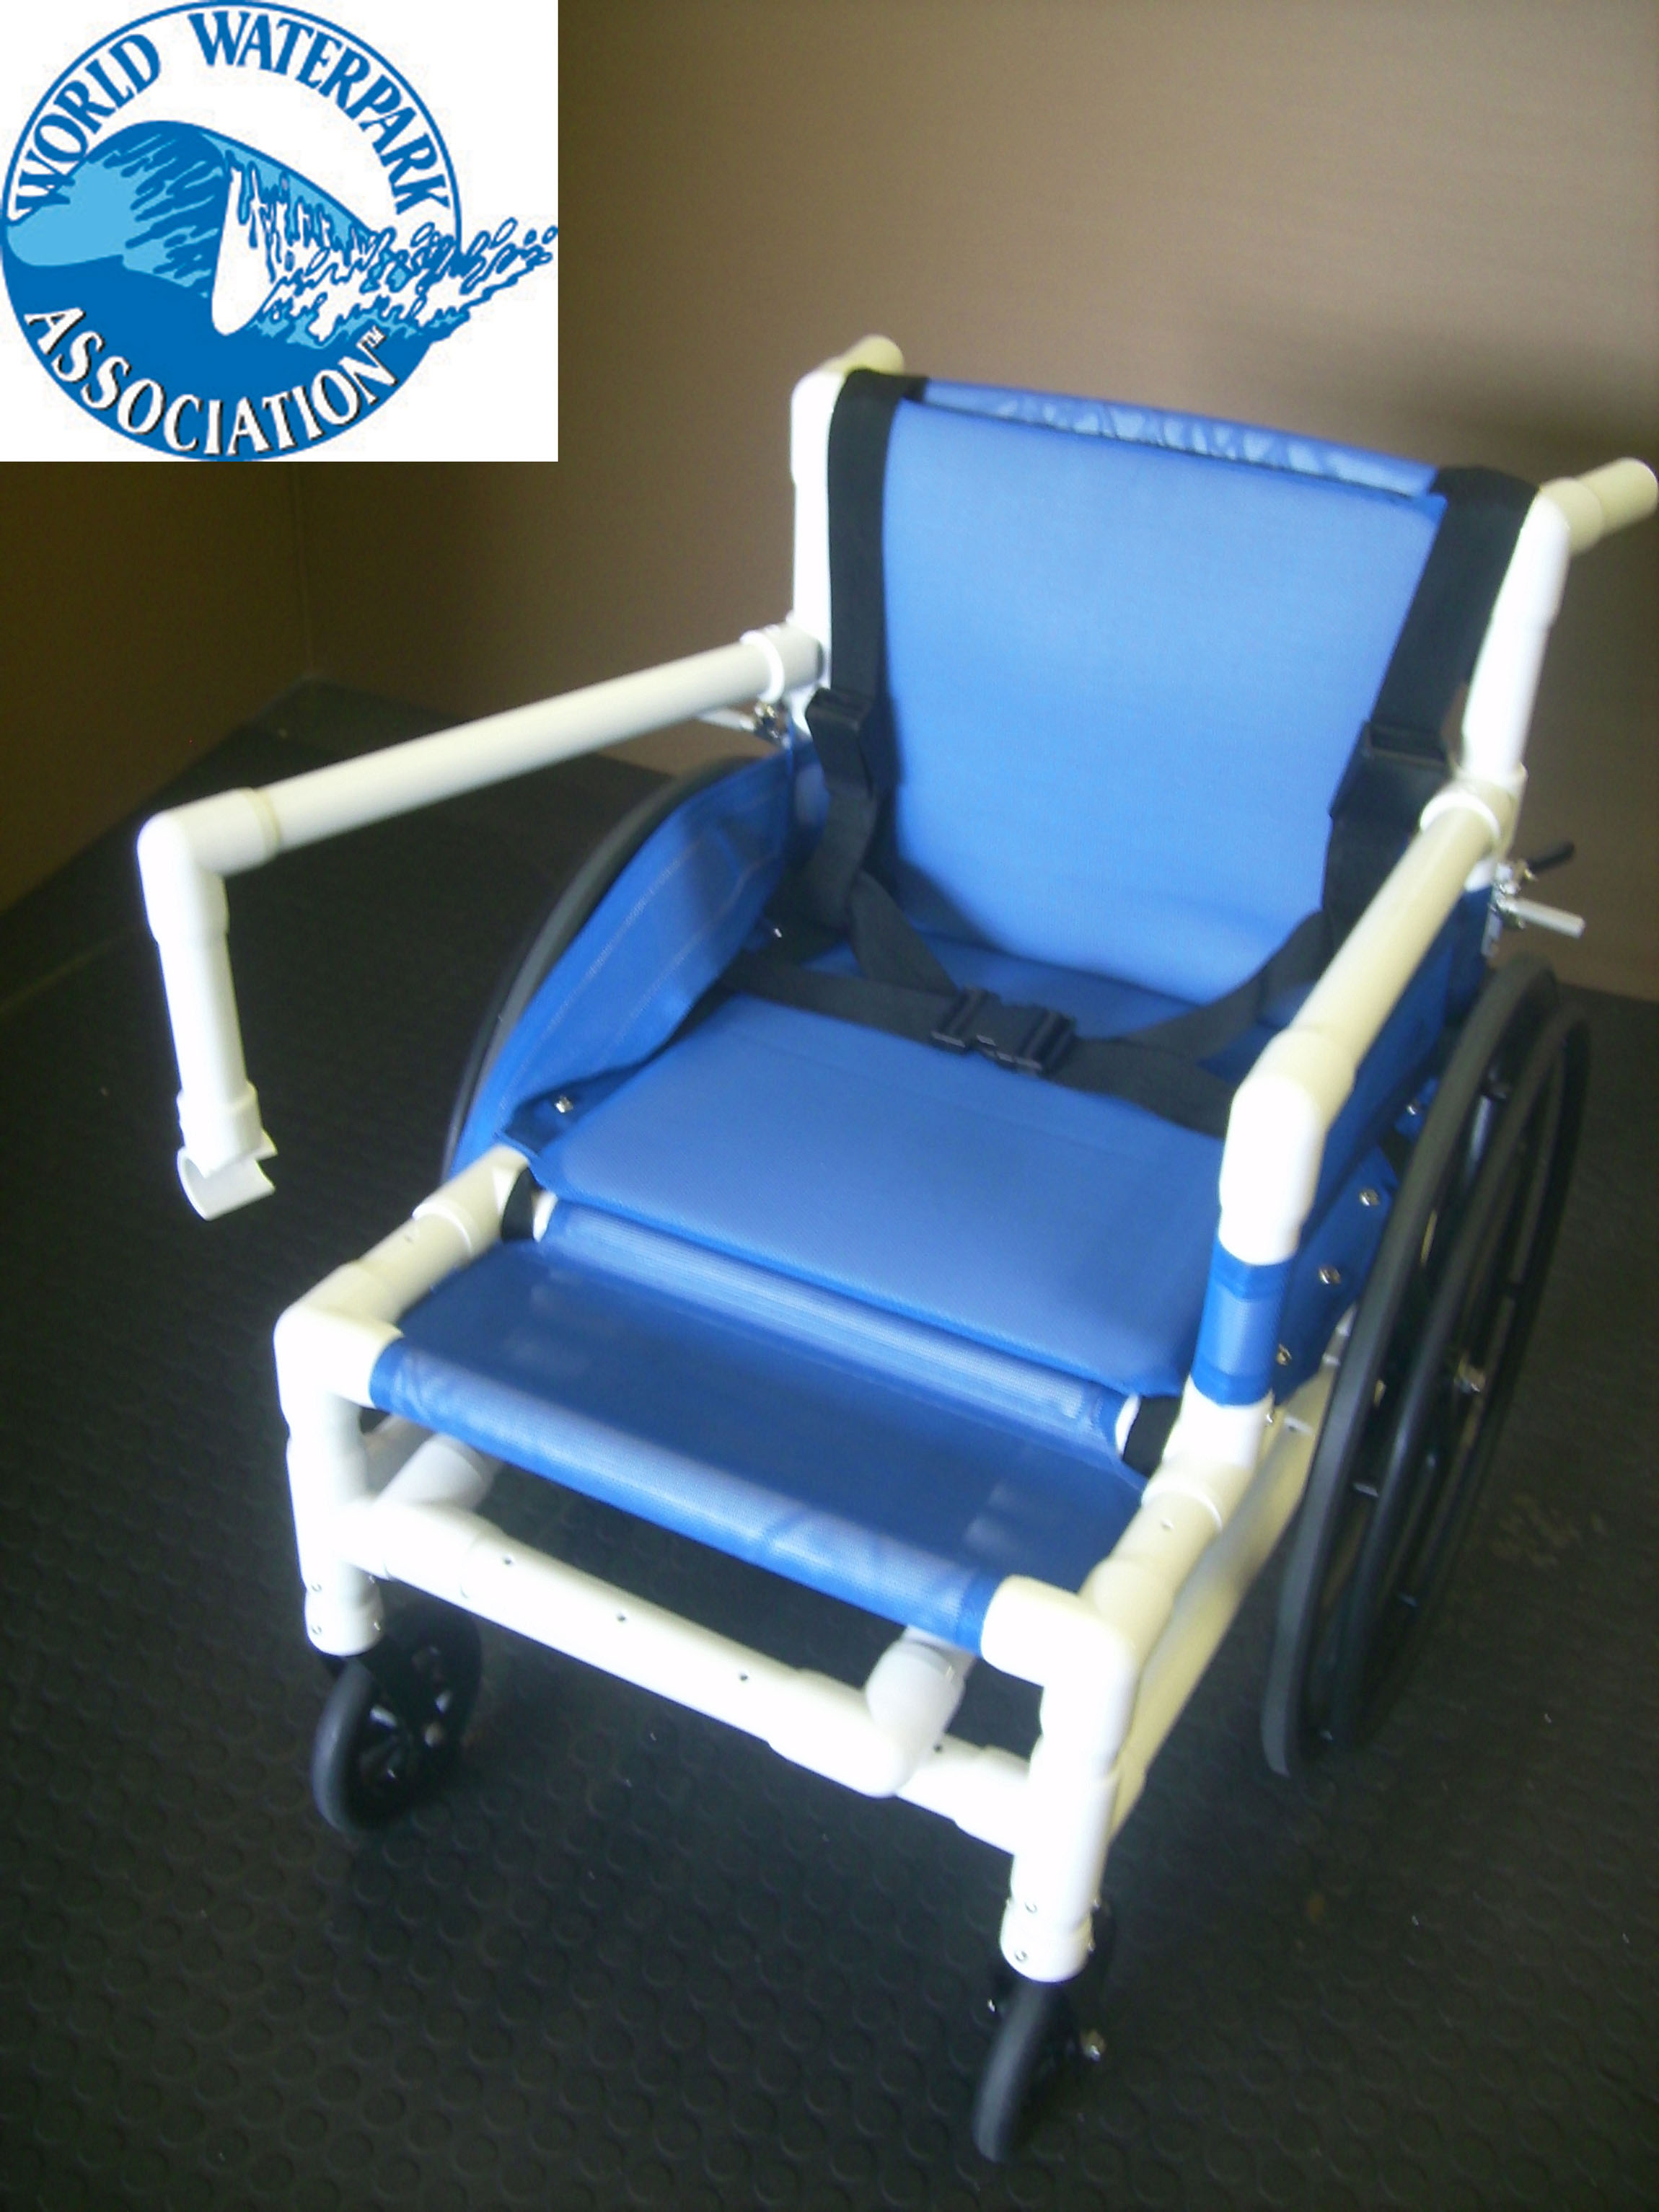 Aquatic wheelchair